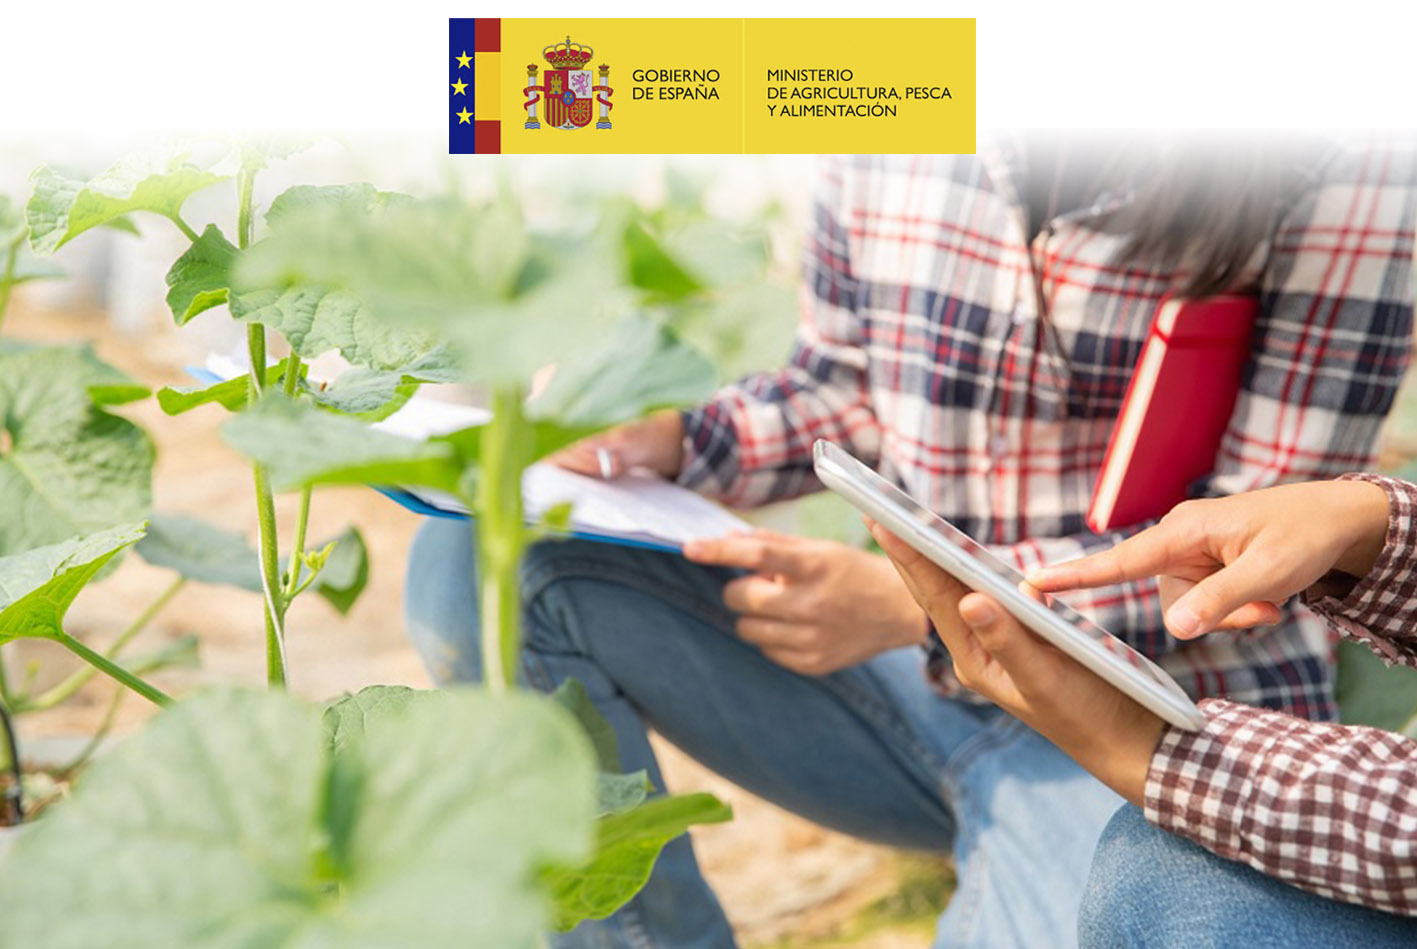 El Observatorio de la Digitalización en el Sector Agroalimentario lanza una encuesta online para conocer el grado de adopción de nuevas tecnologías digitales en la producción primaria y la industria